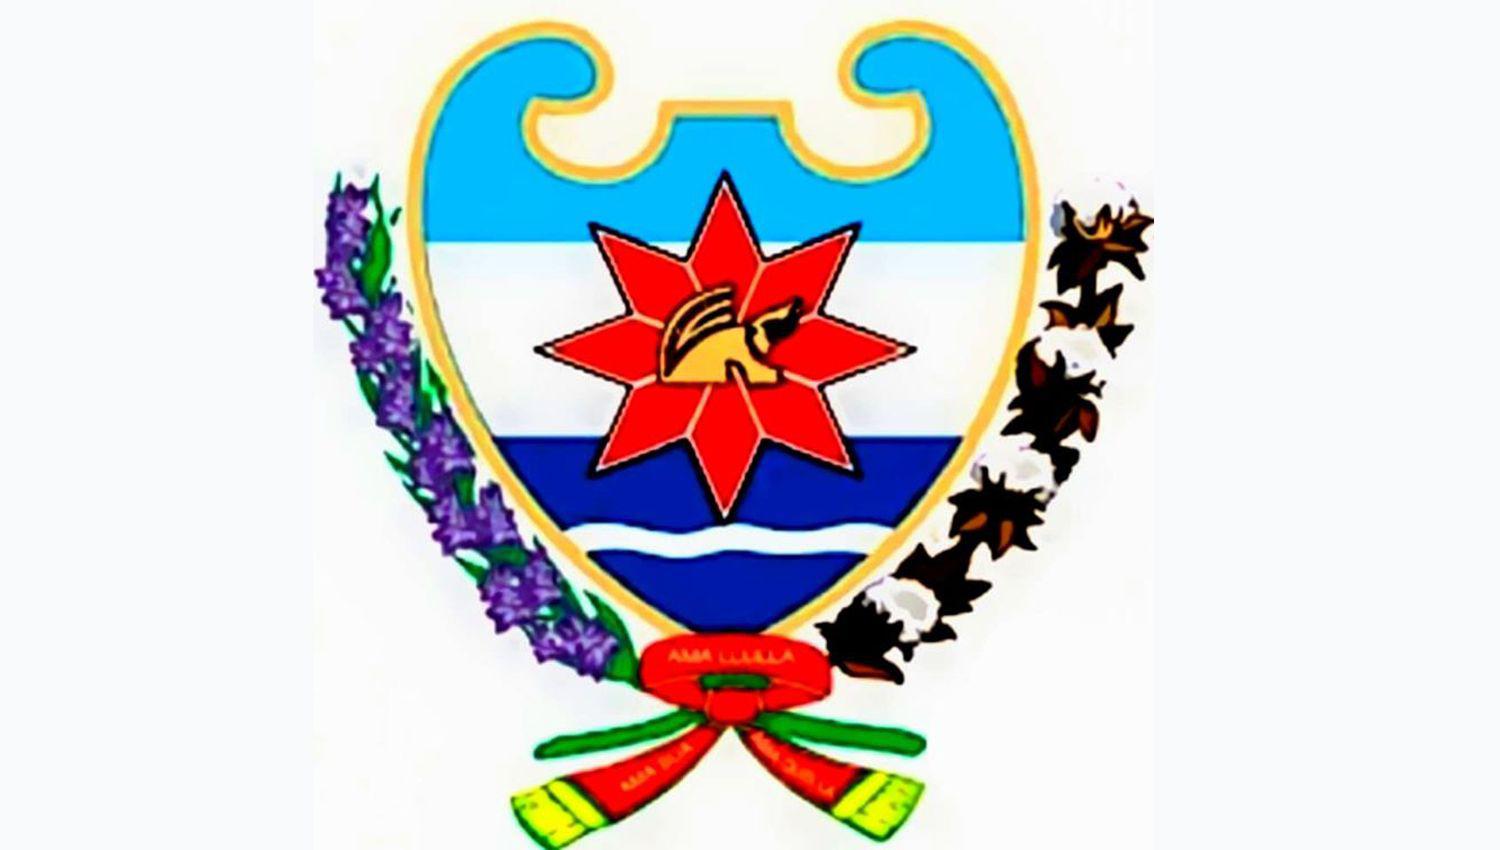 Significado del escudo de la ciudad